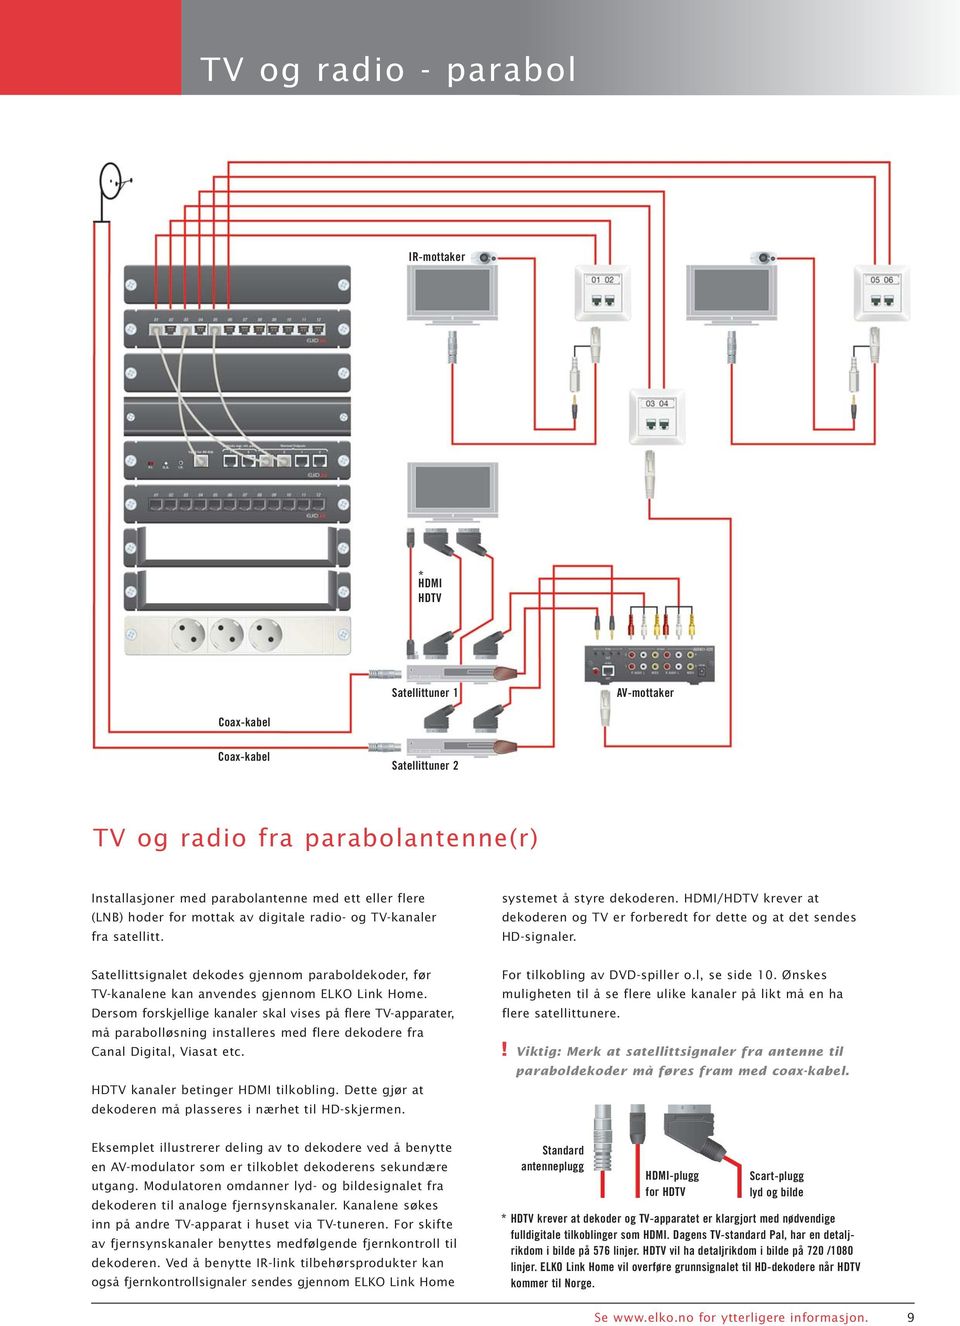 Satellittsignalet dekodes gjennom paraboldekoder, før TV-kanalene kan anvendes gjennom ELKO Link Home.